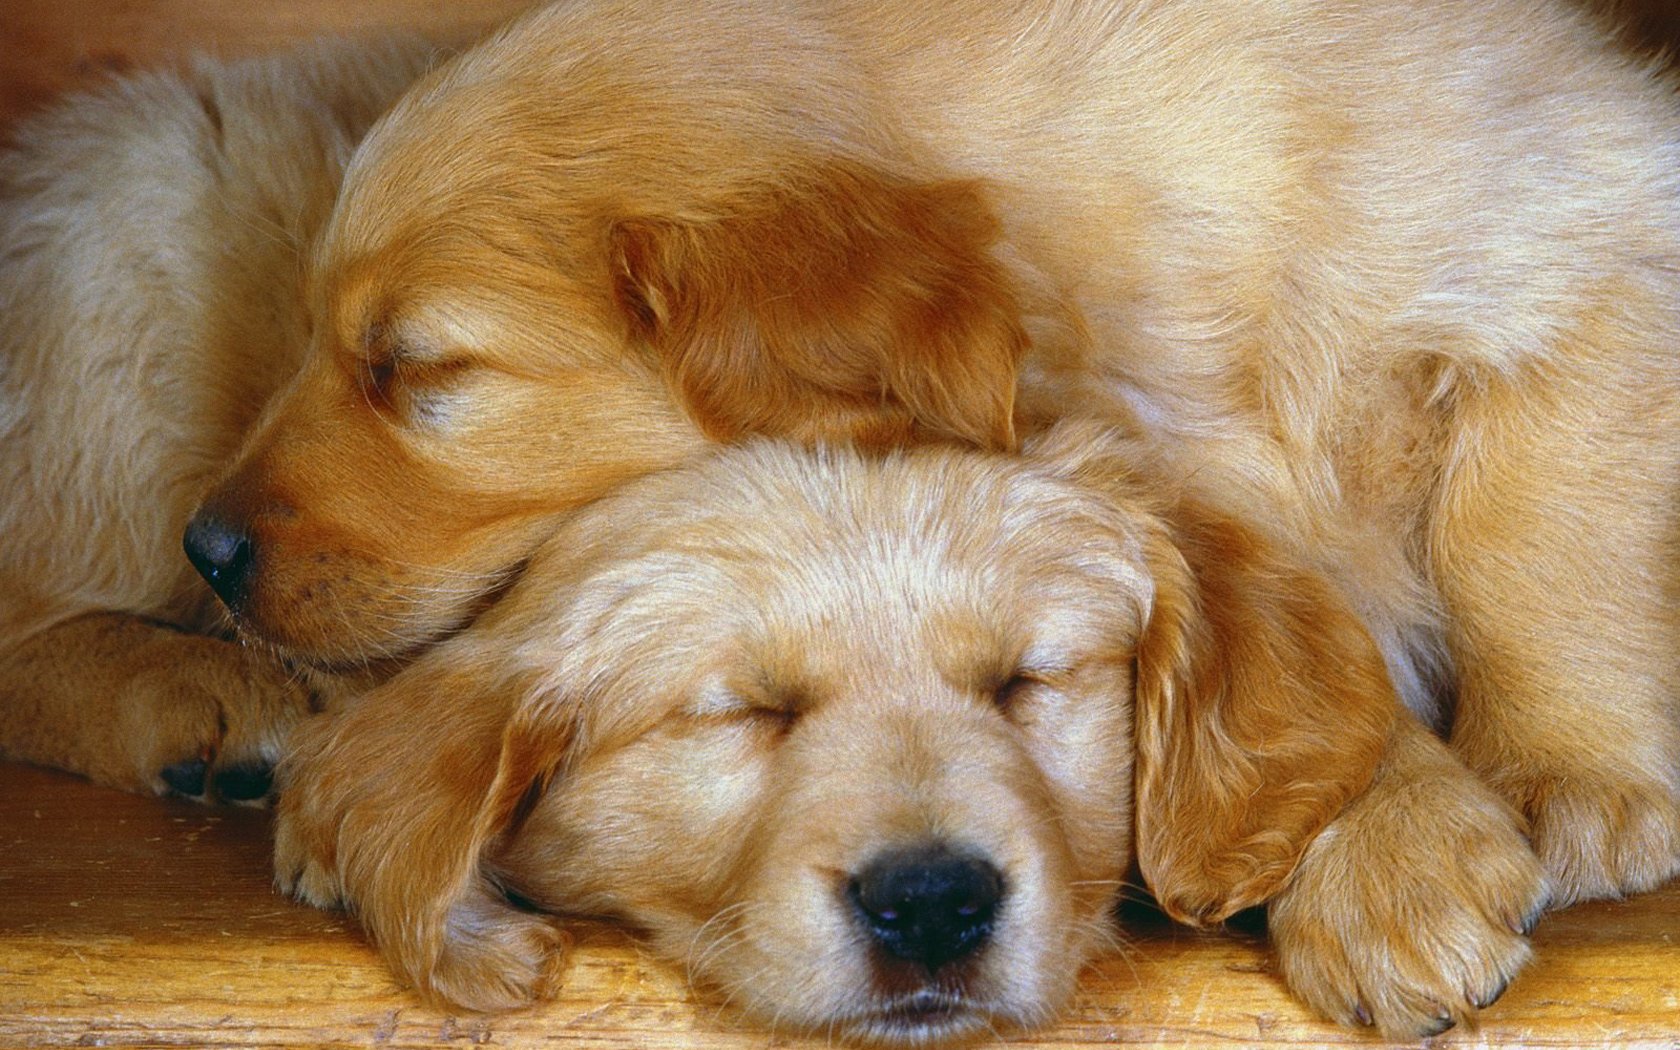 Tender Moments - Golden Retrievers Puppies Cuddling - HD Wallpaper 